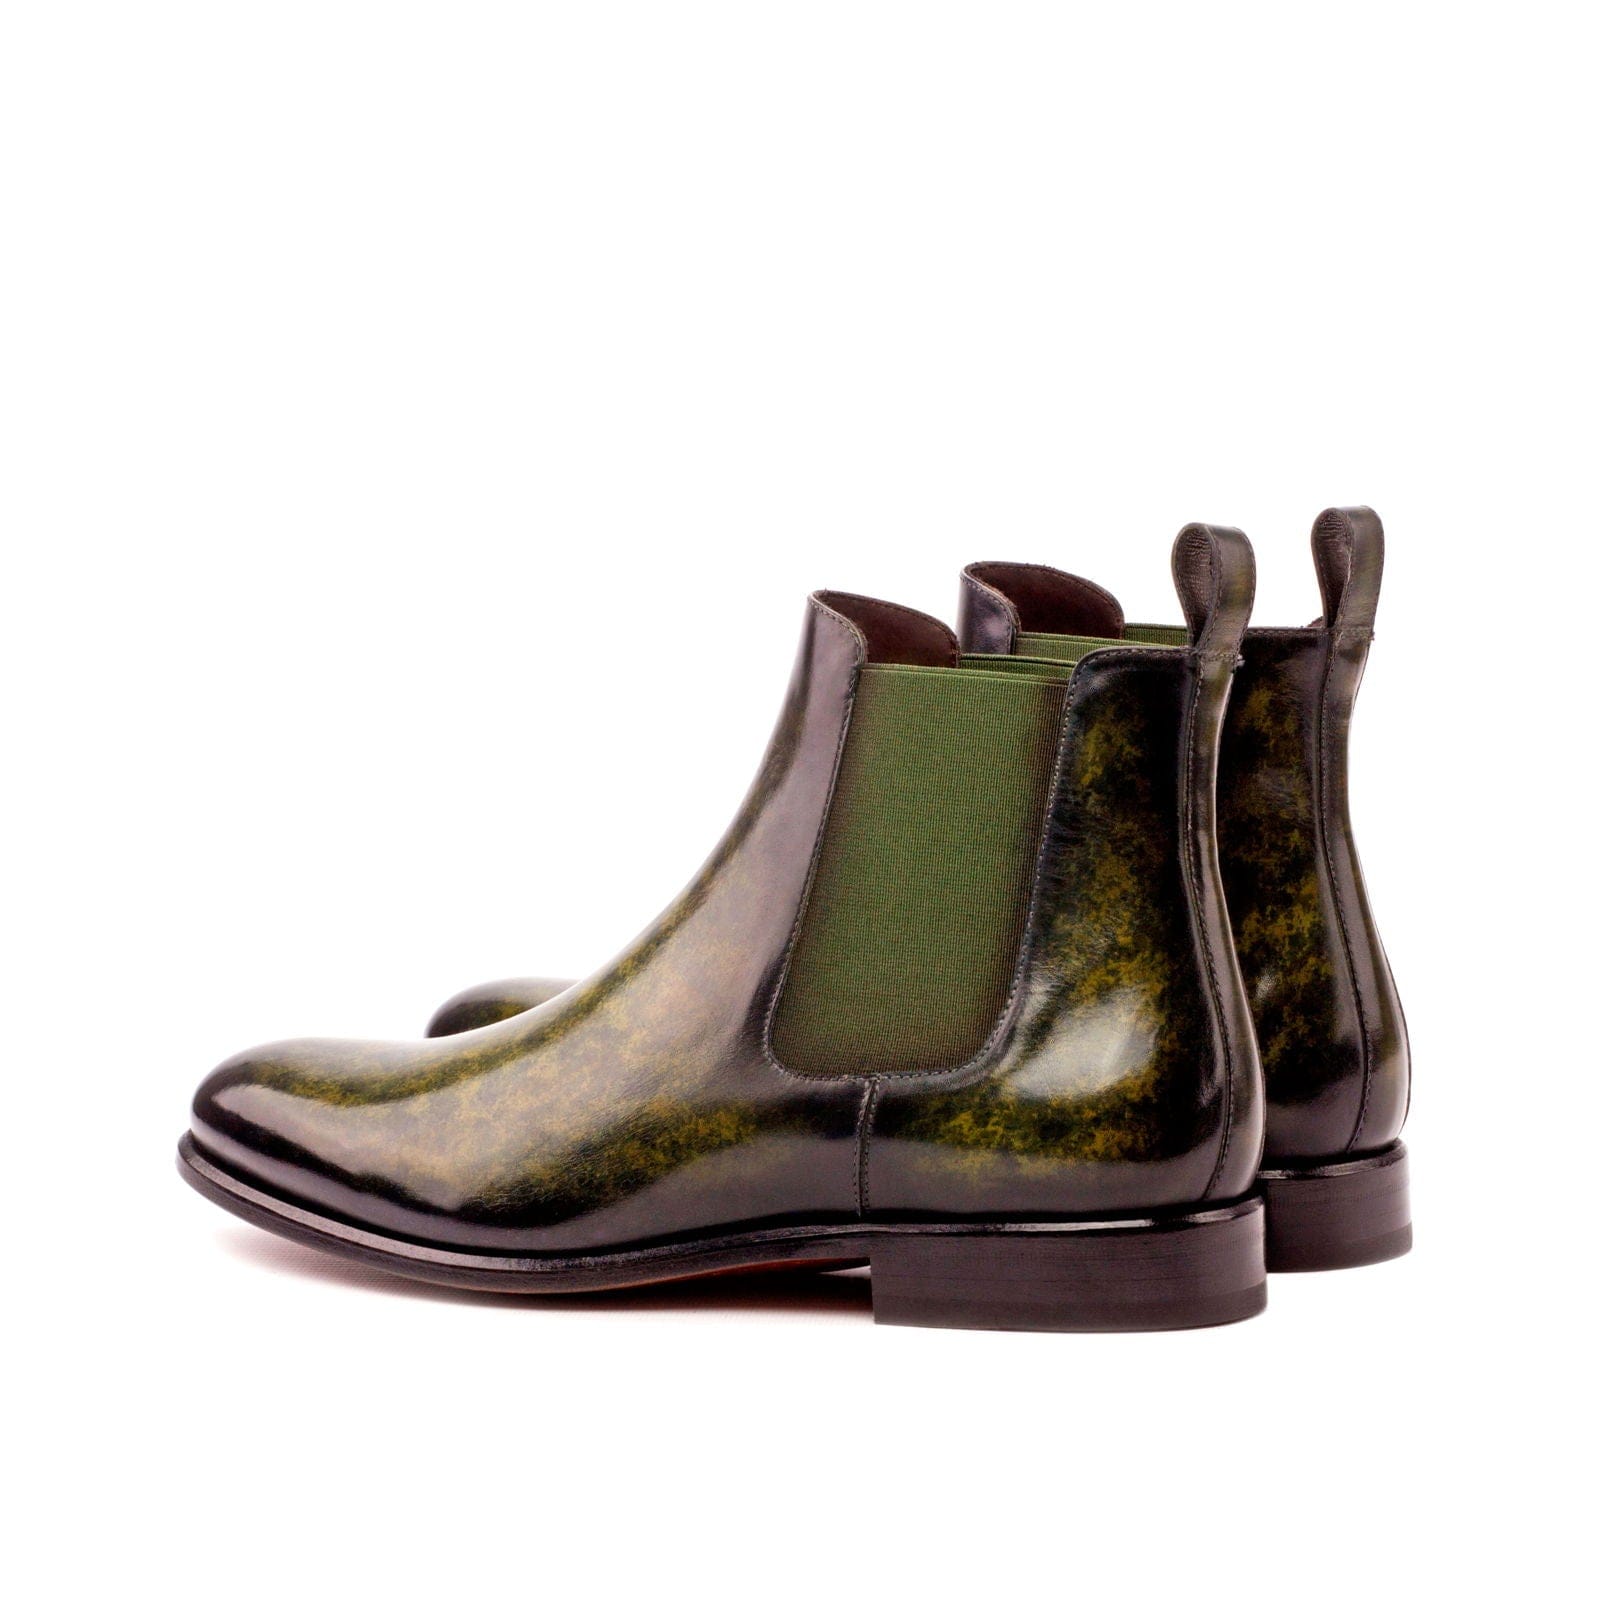 Sea of Green Hand-painted Patina Men's Chelsea Boots - Maison de Kingsley Couture Harmonie et Fureur Spain